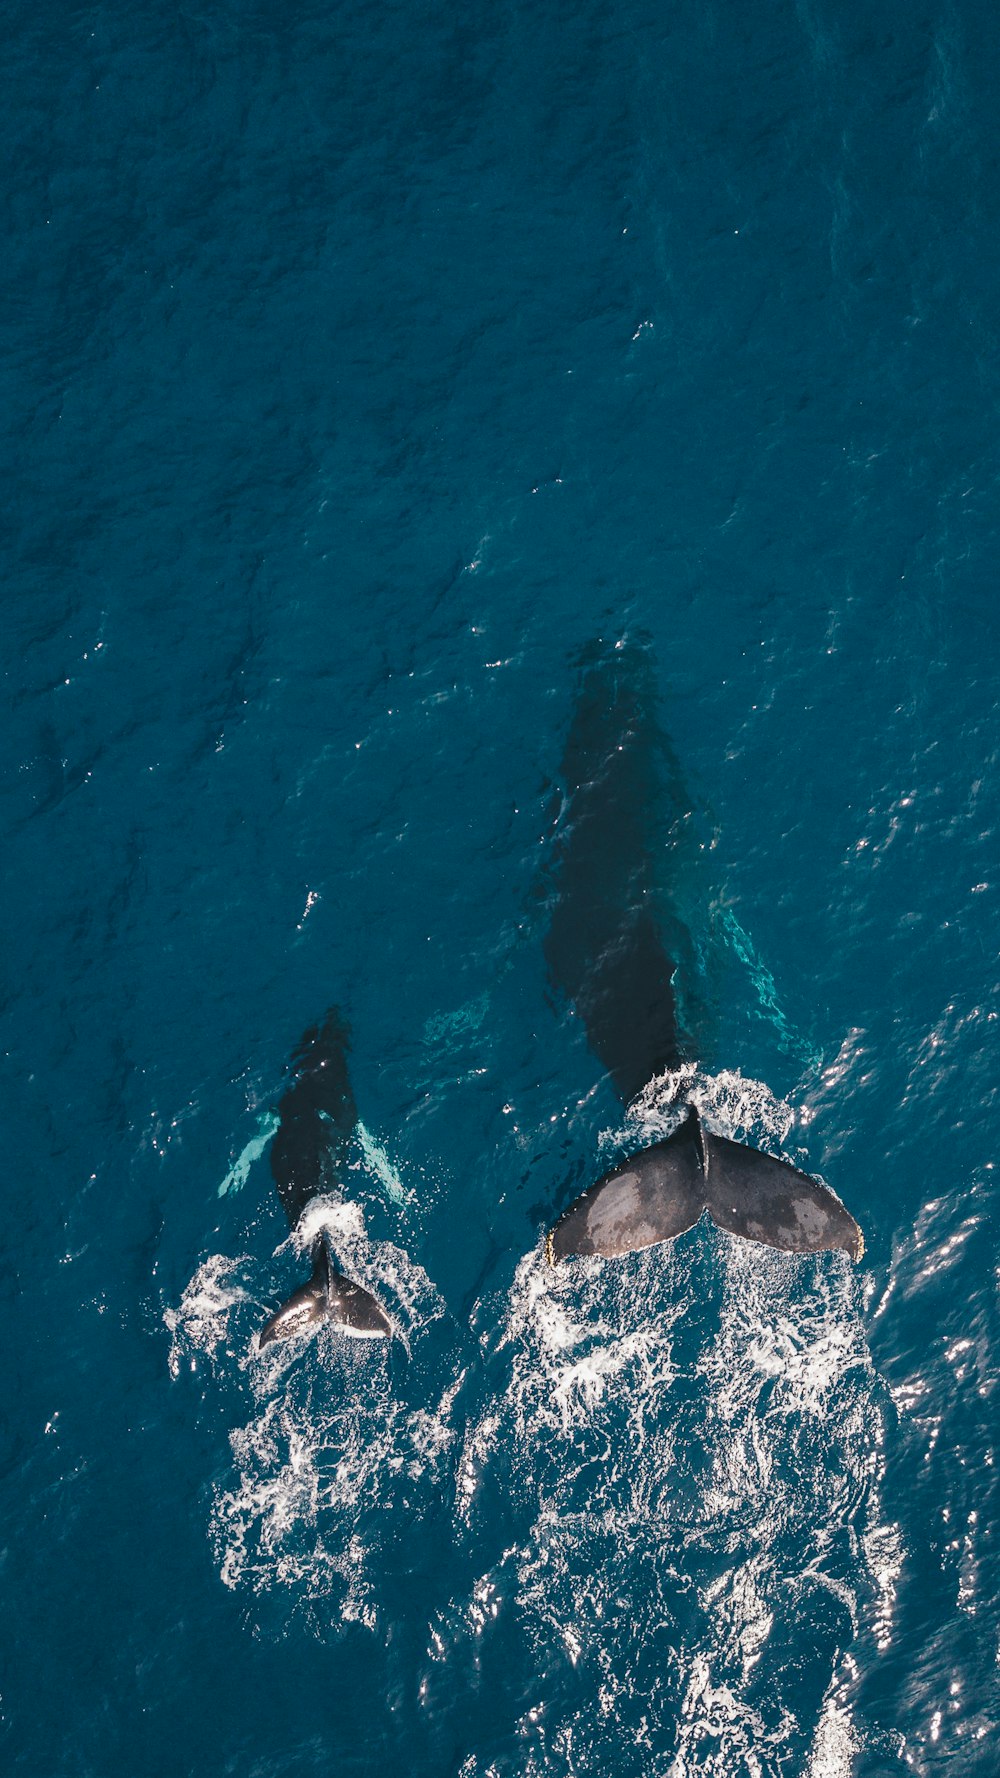 두 마리의 검은 고래가 물에서 수영하고 있습니다.